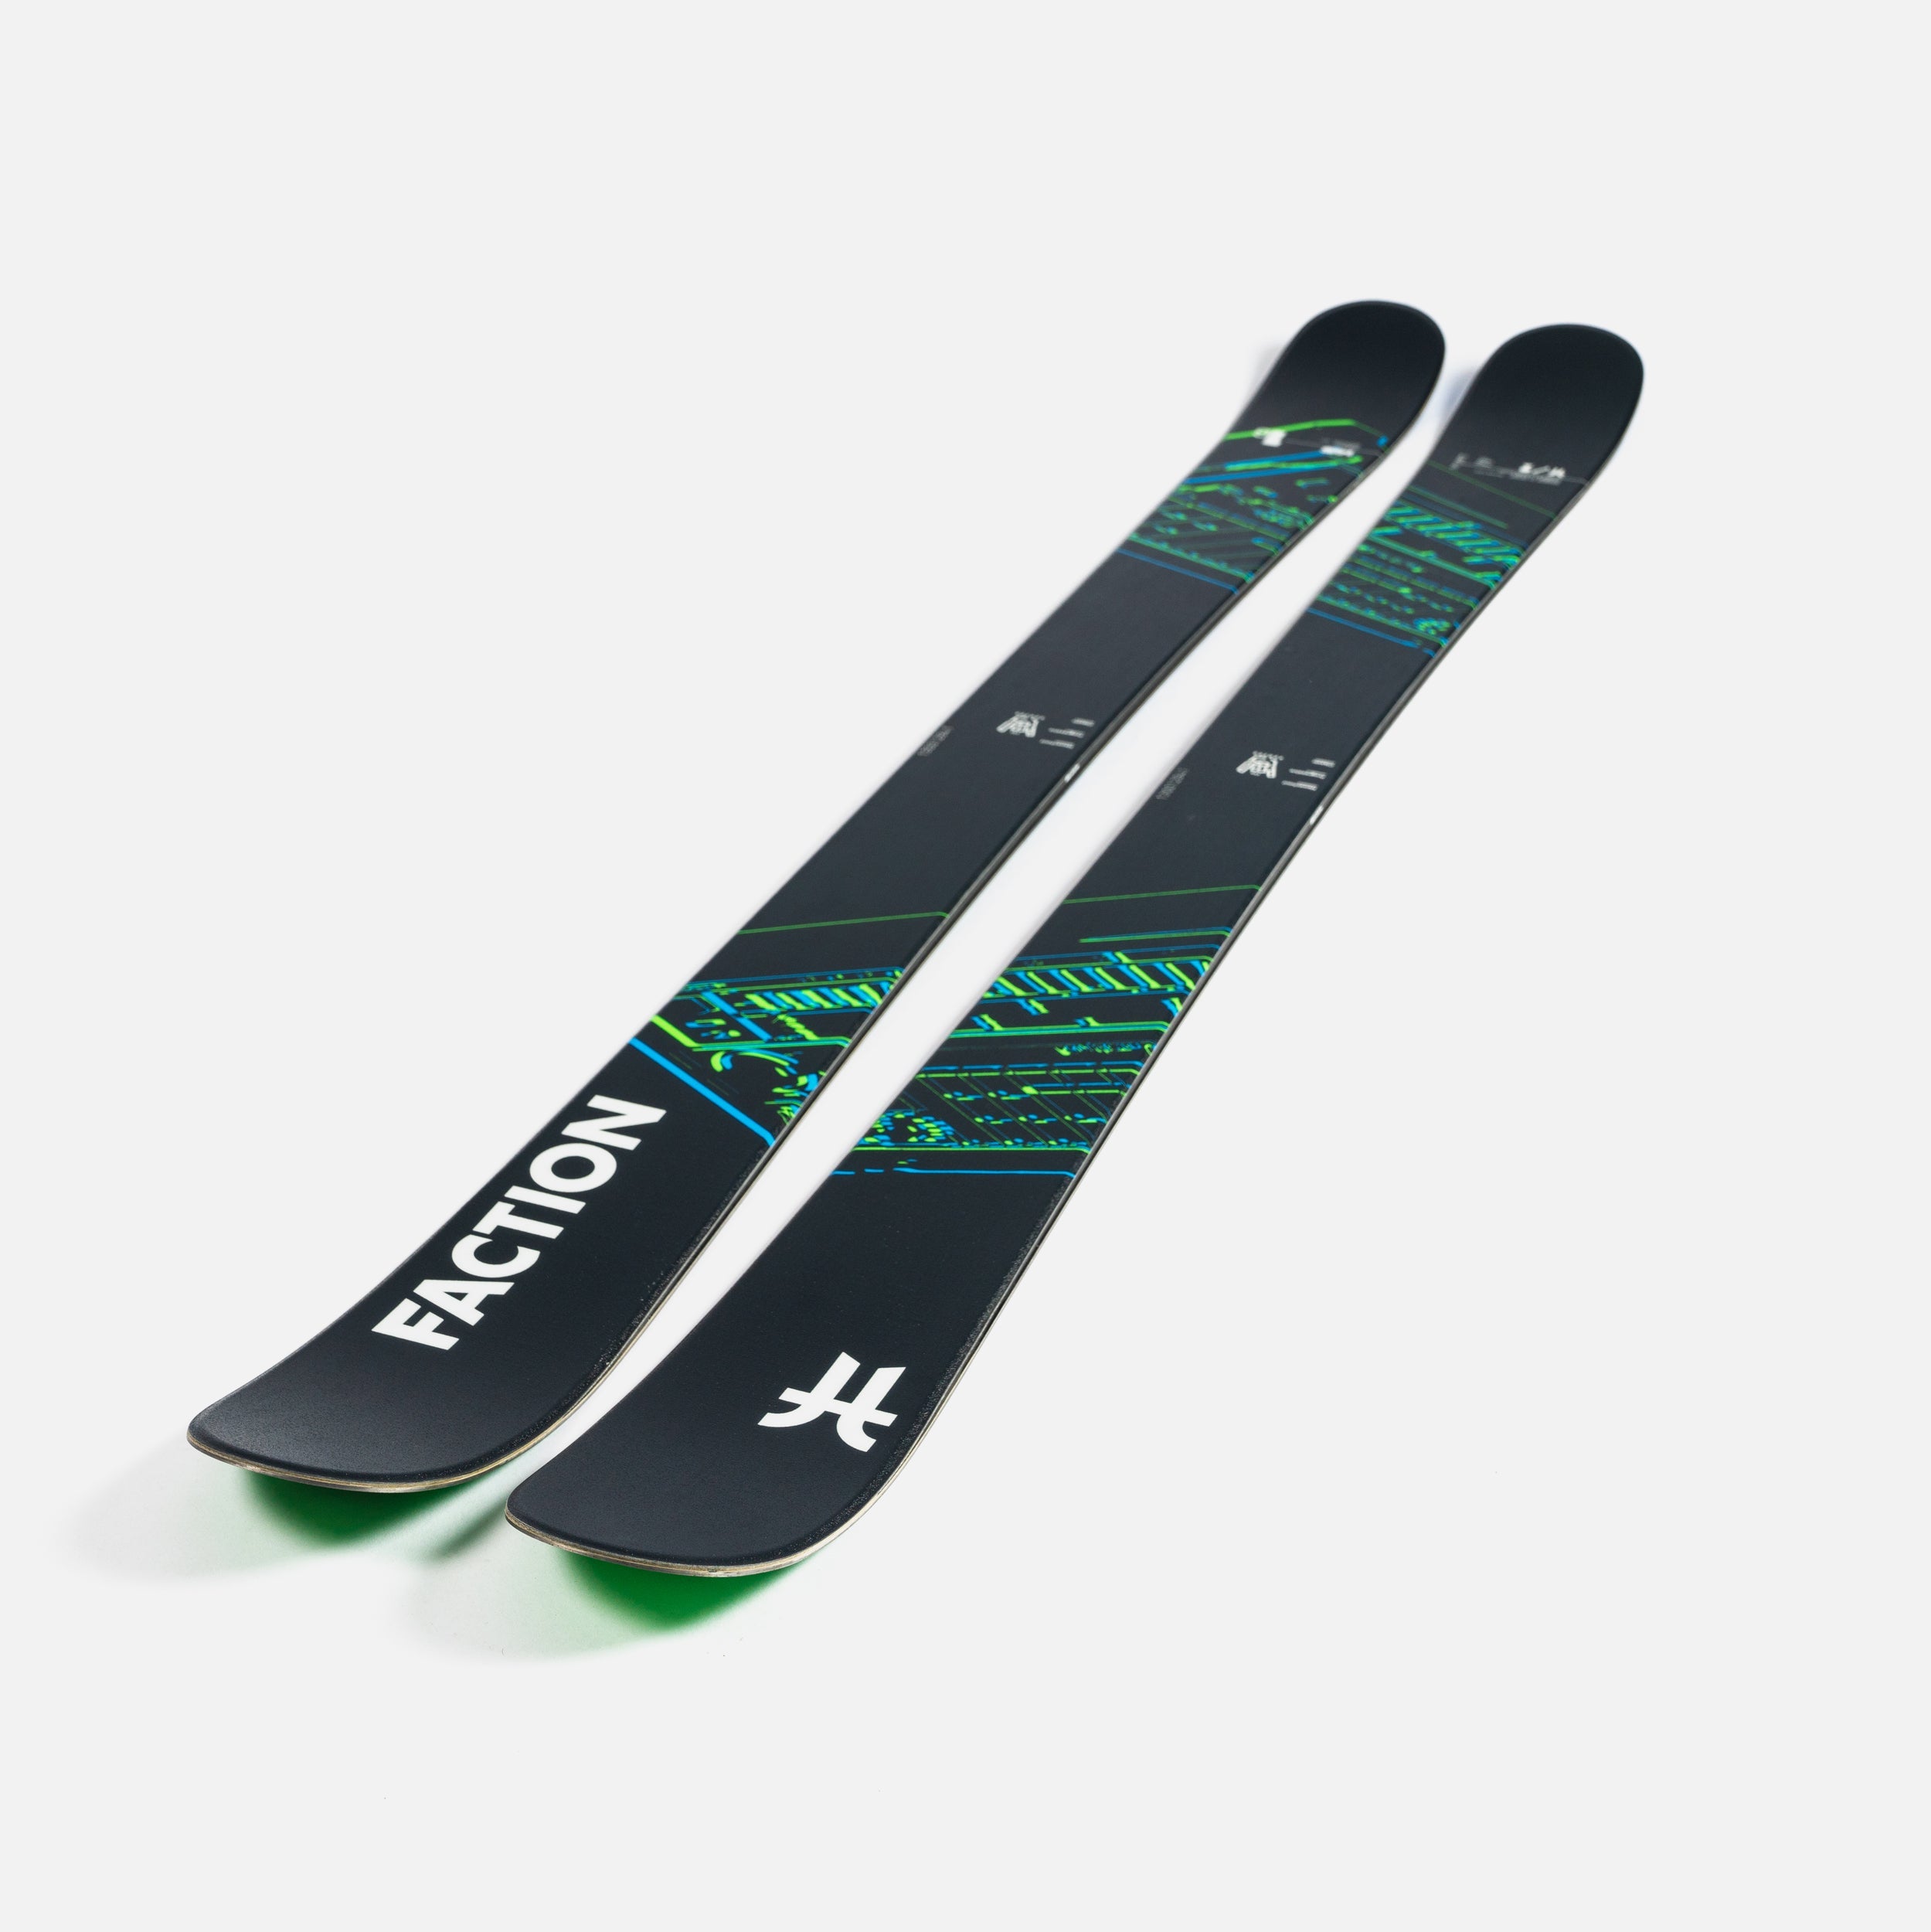 板の長さ170cm〜FACTION ファクション　スキー板172センチ